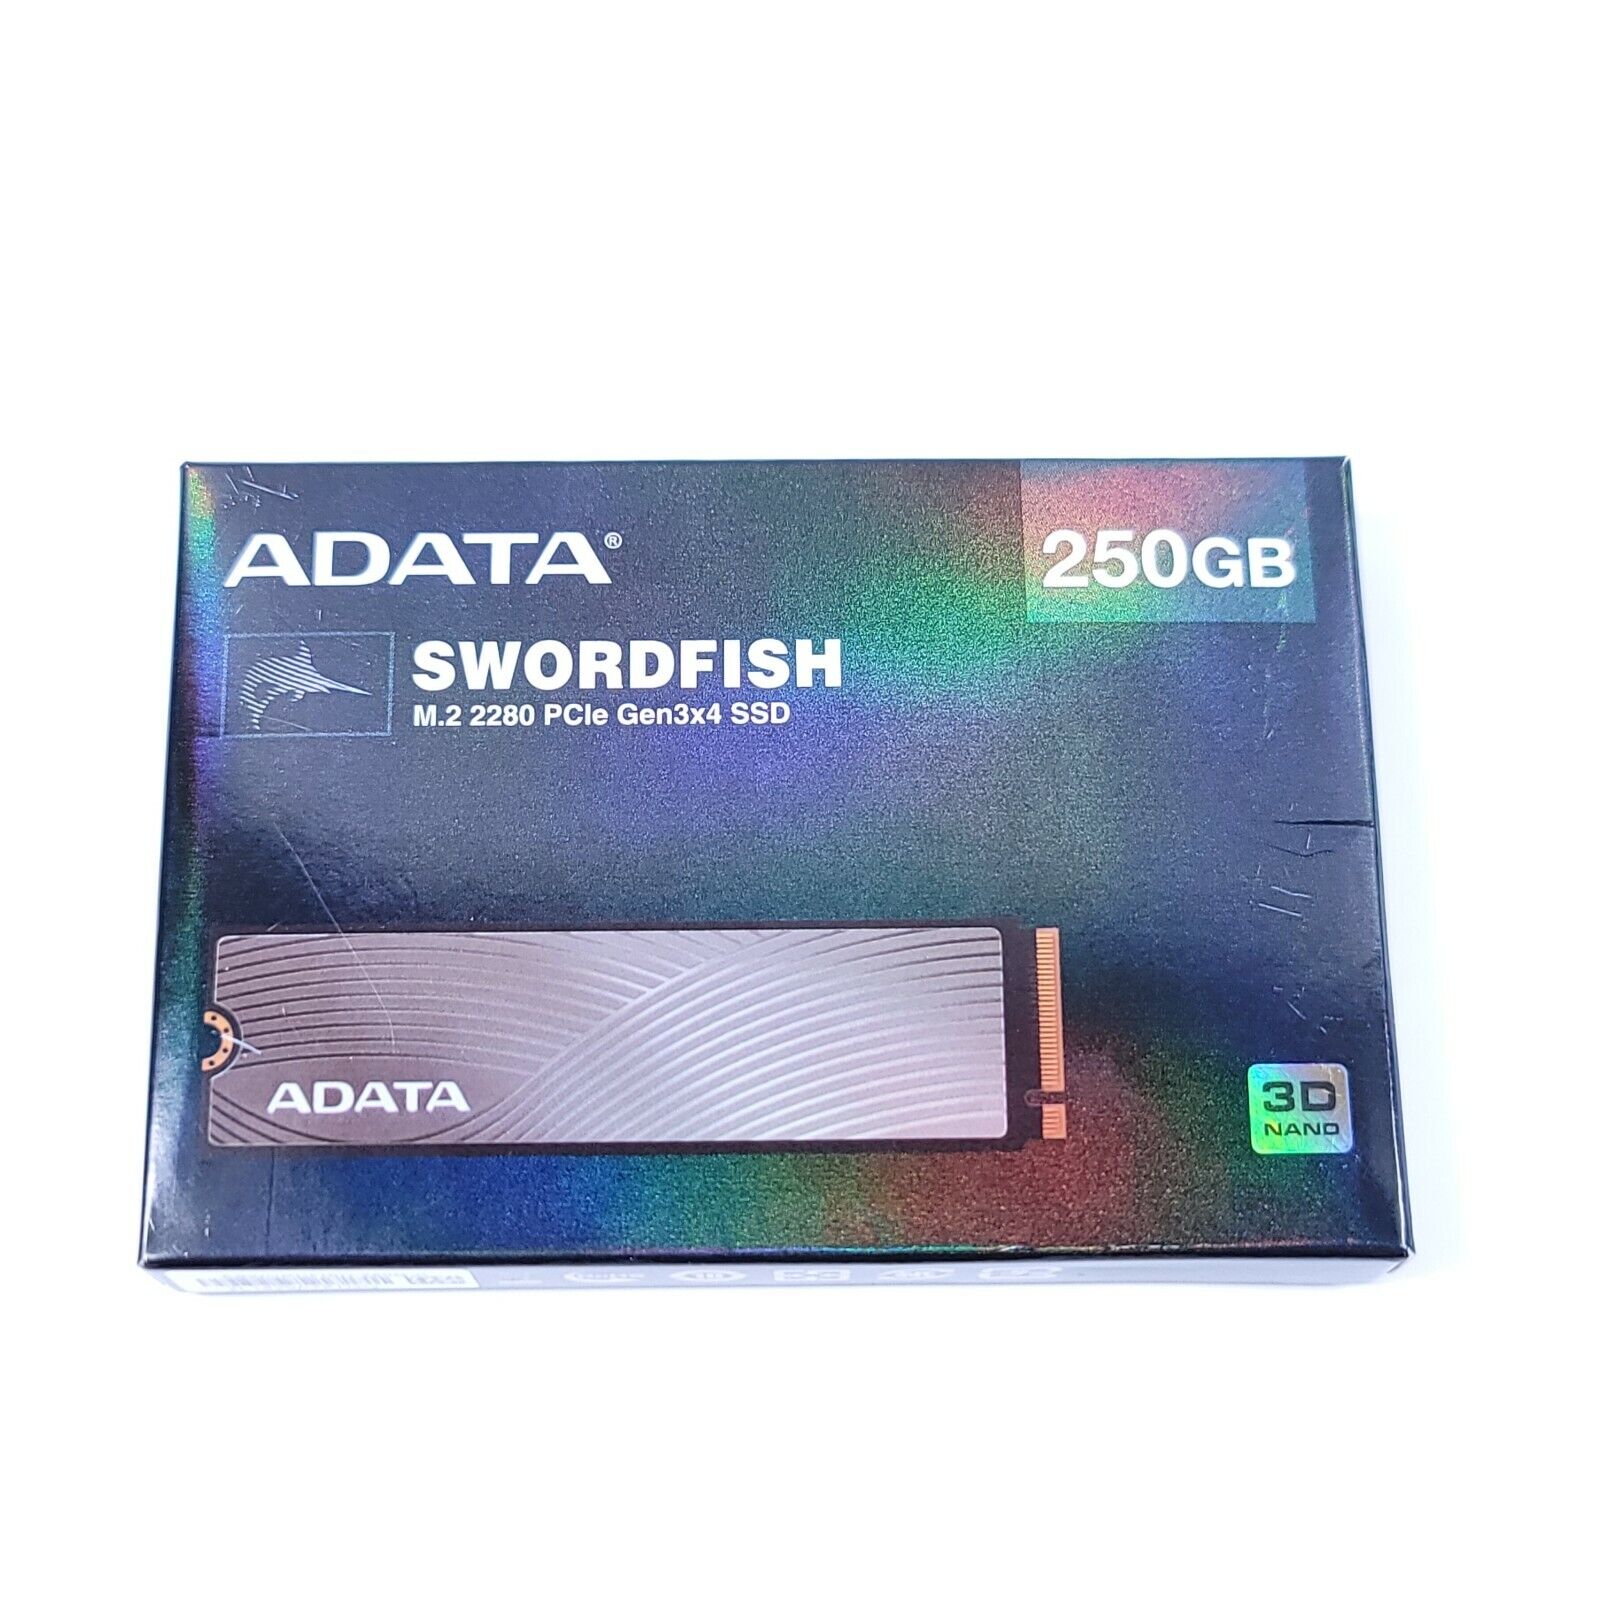 NEW ADATA SWORDFISH 250GB M.2 2280 3D TLC NAND PCIe Gen3x4 SSD Solid State Drive